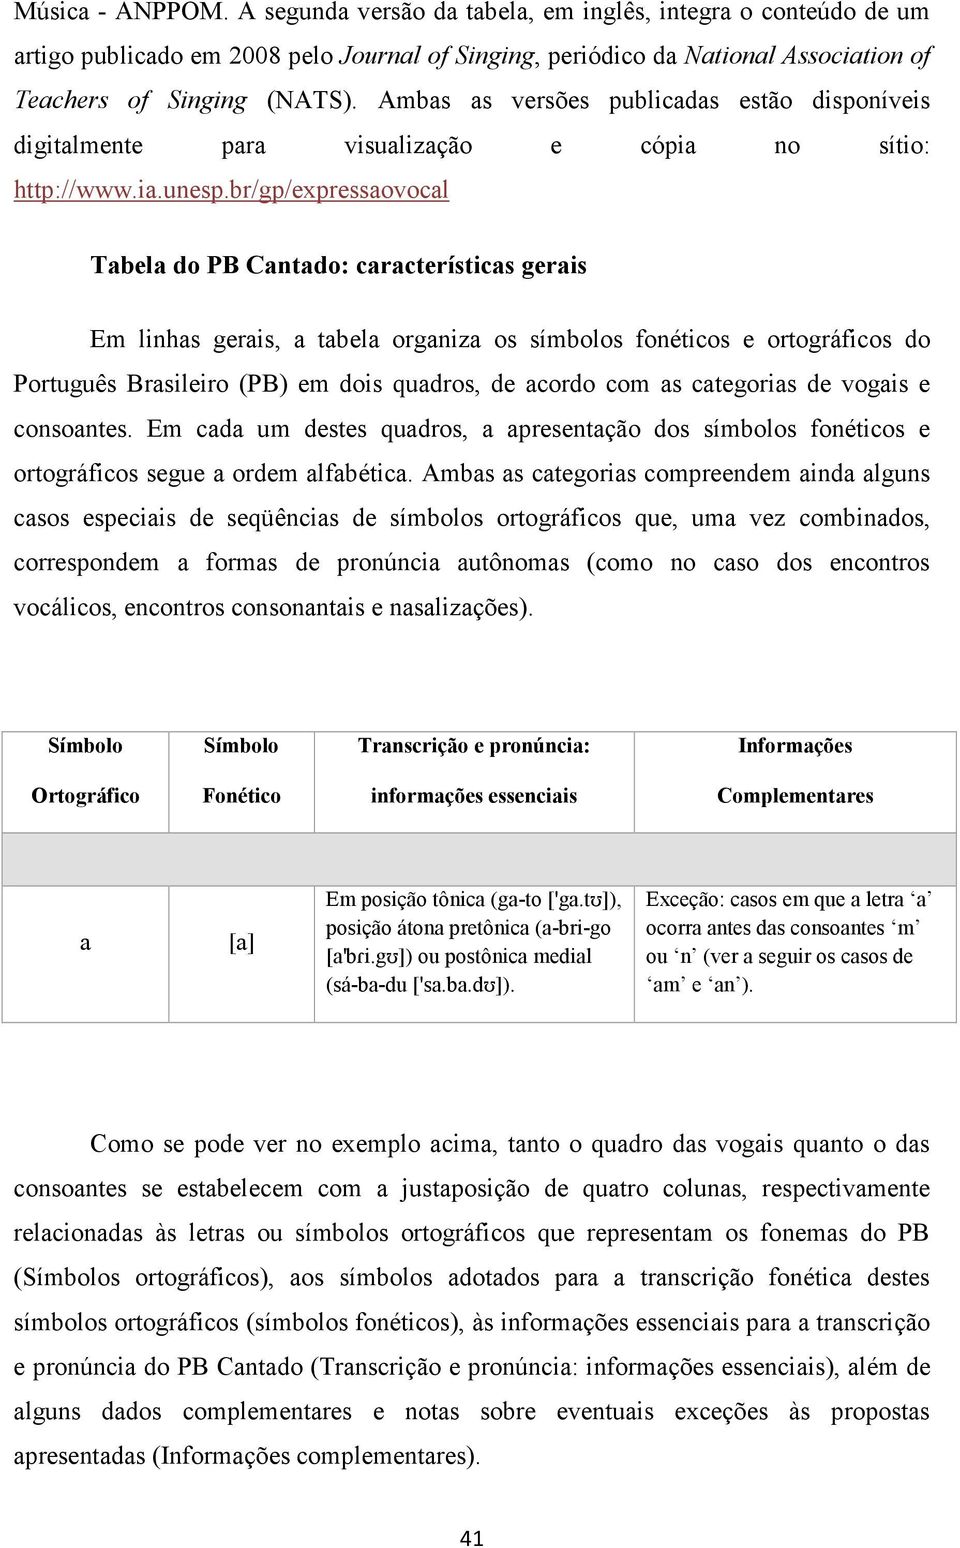 br/gp/expressaovocal Tabela do PB Cantado: características gerais Em linhas gerais, a tabela organiza os símbolos fonéticos e ortográficos do Português Brasileiro (PB) em dois quadros, de acordo com